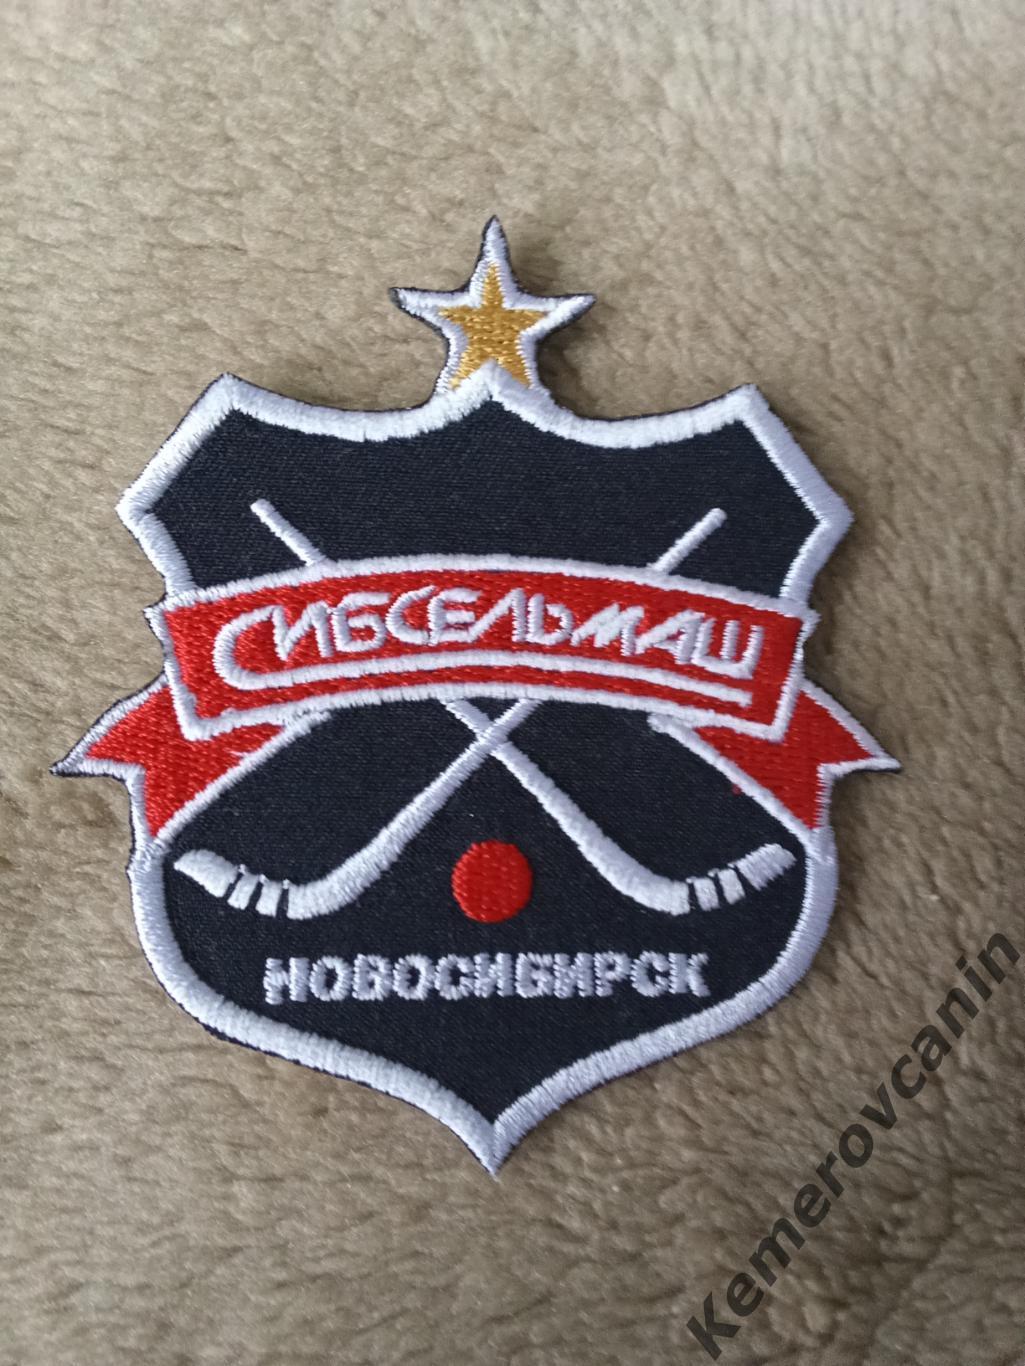 Шеврон Сибсельмаш Новосибирск вид 2 сезон 2022/2023 хоккей с мячом